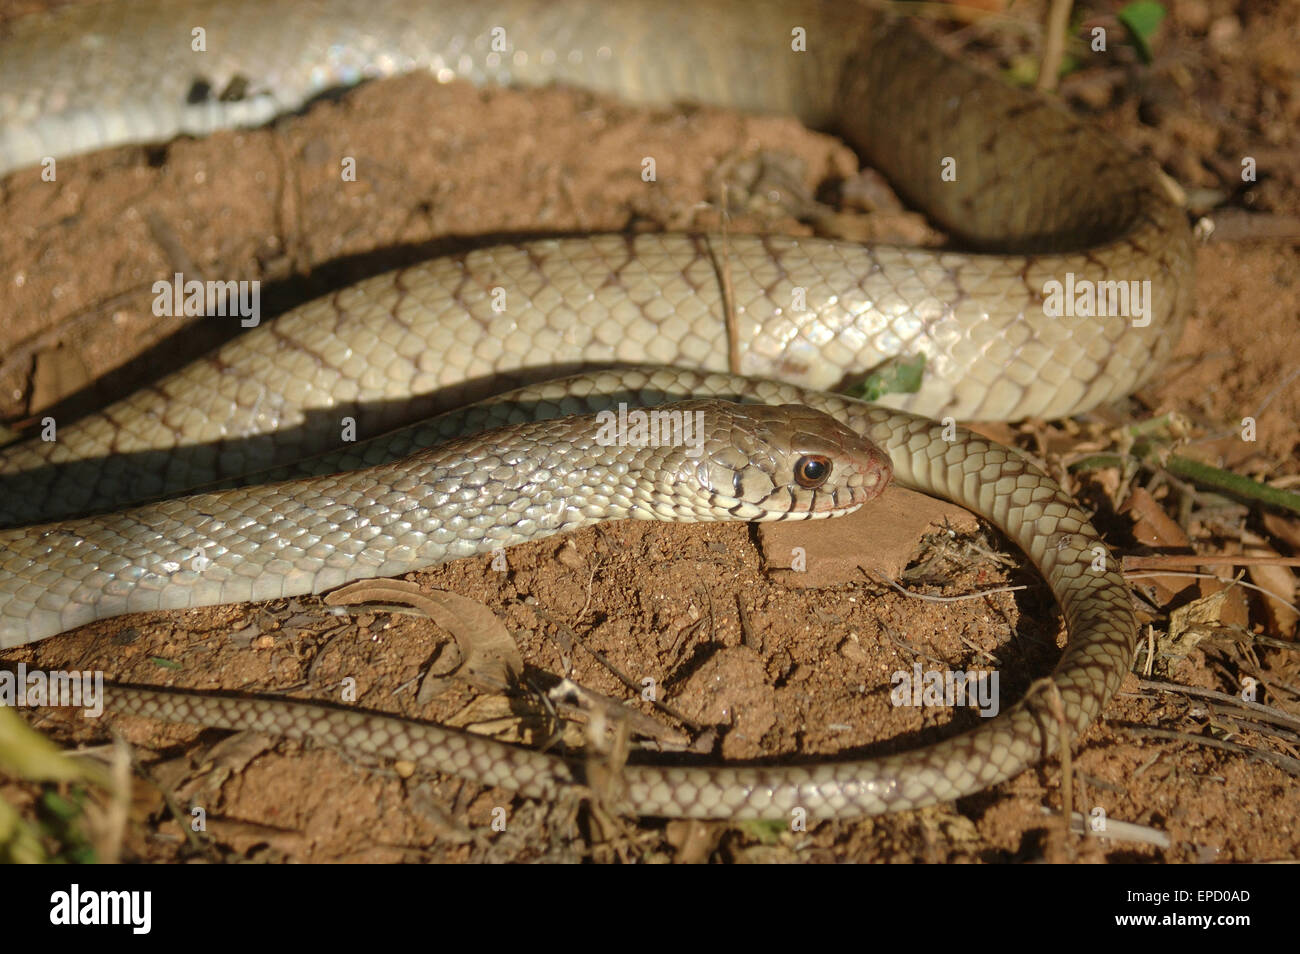 Portrait de serpent inconnu, Tamil Nadu, Inde du Sud Banque D'Images